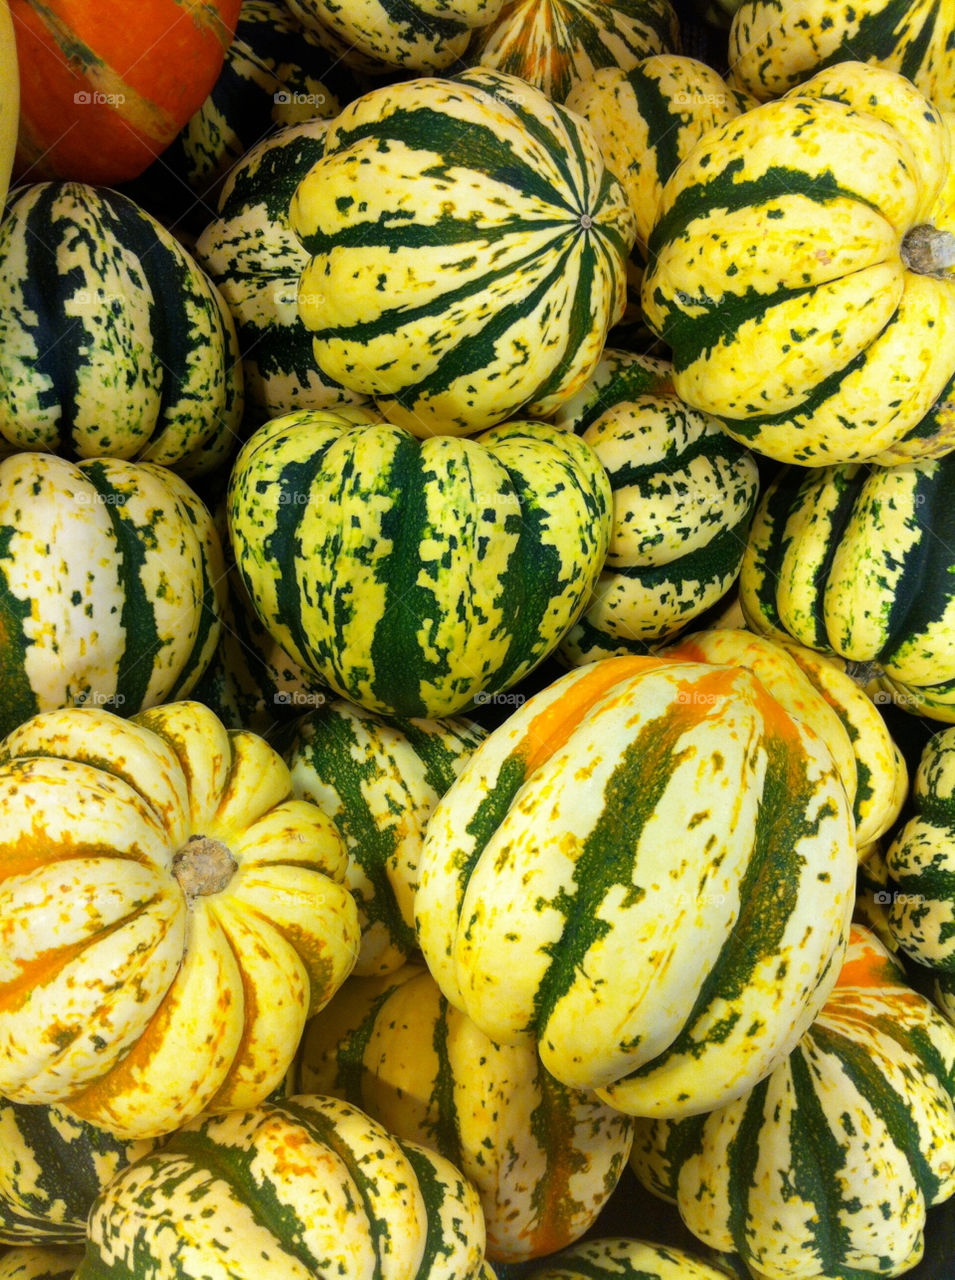 Squash and pumpkins during the autumn season.